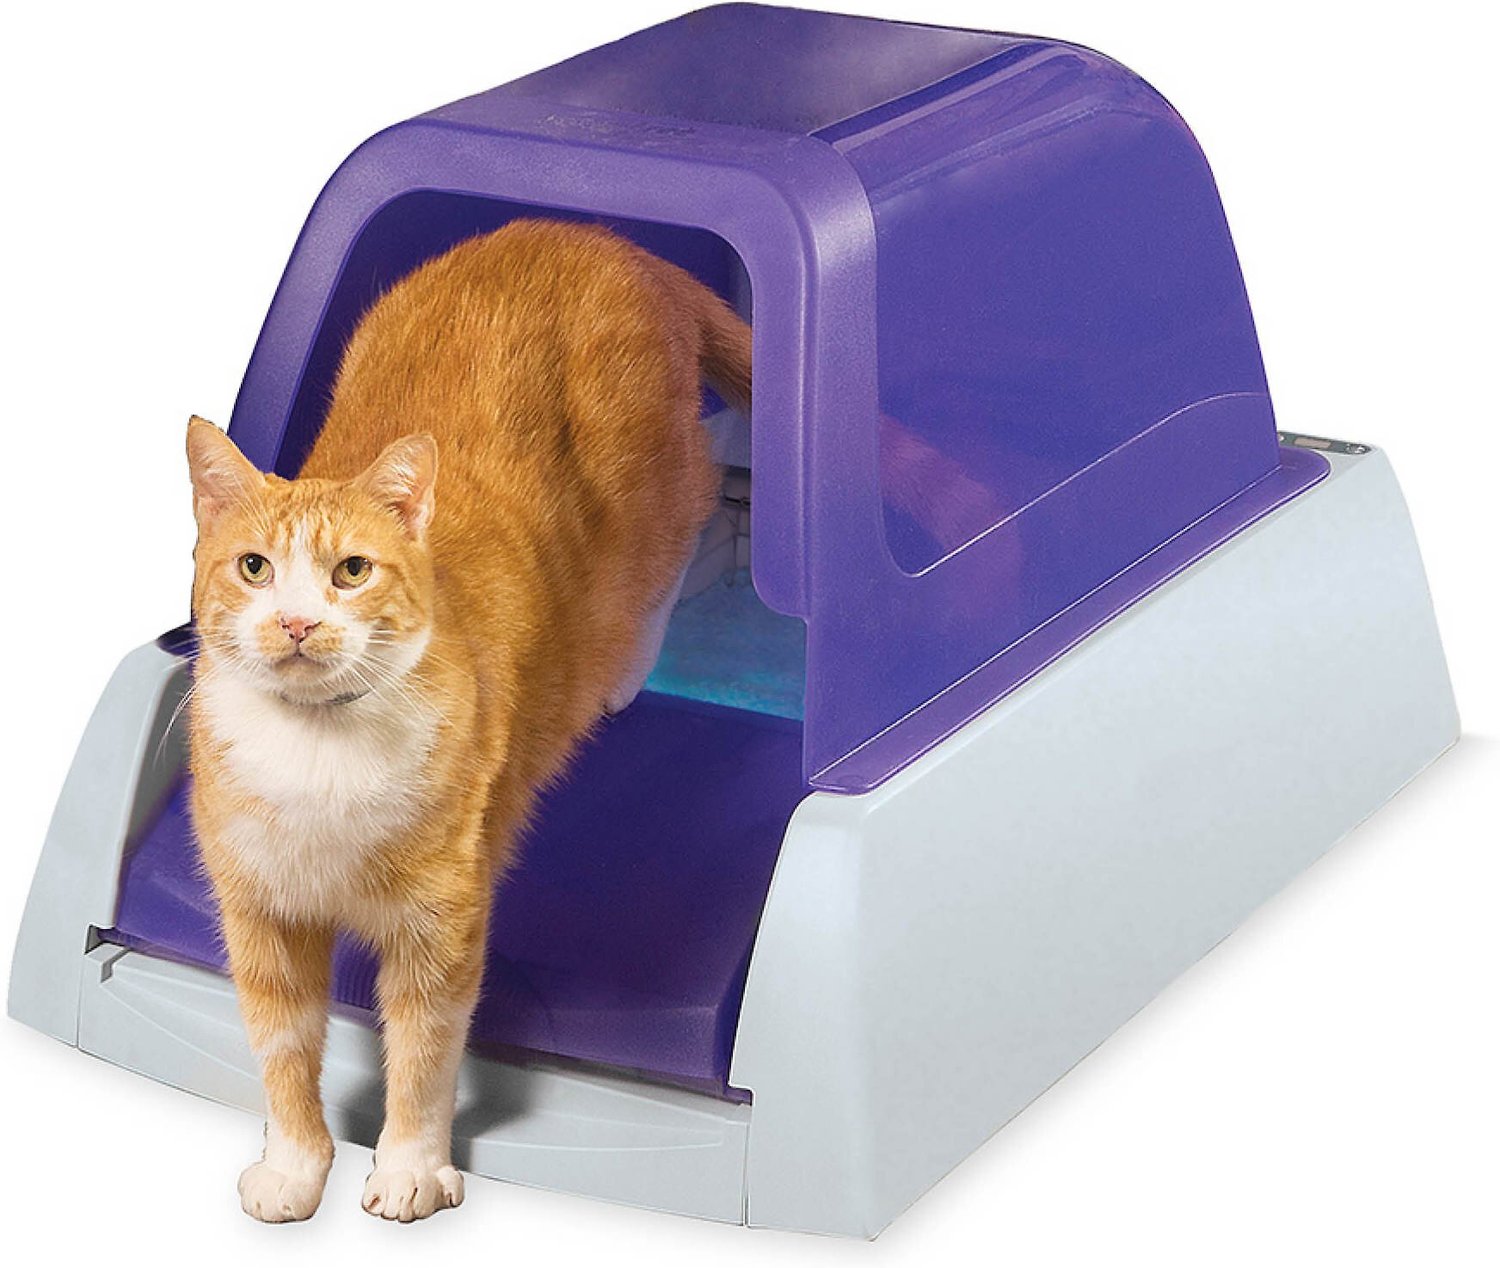 ScoopFree Ultra Automatic Cat Litter Box, Purple